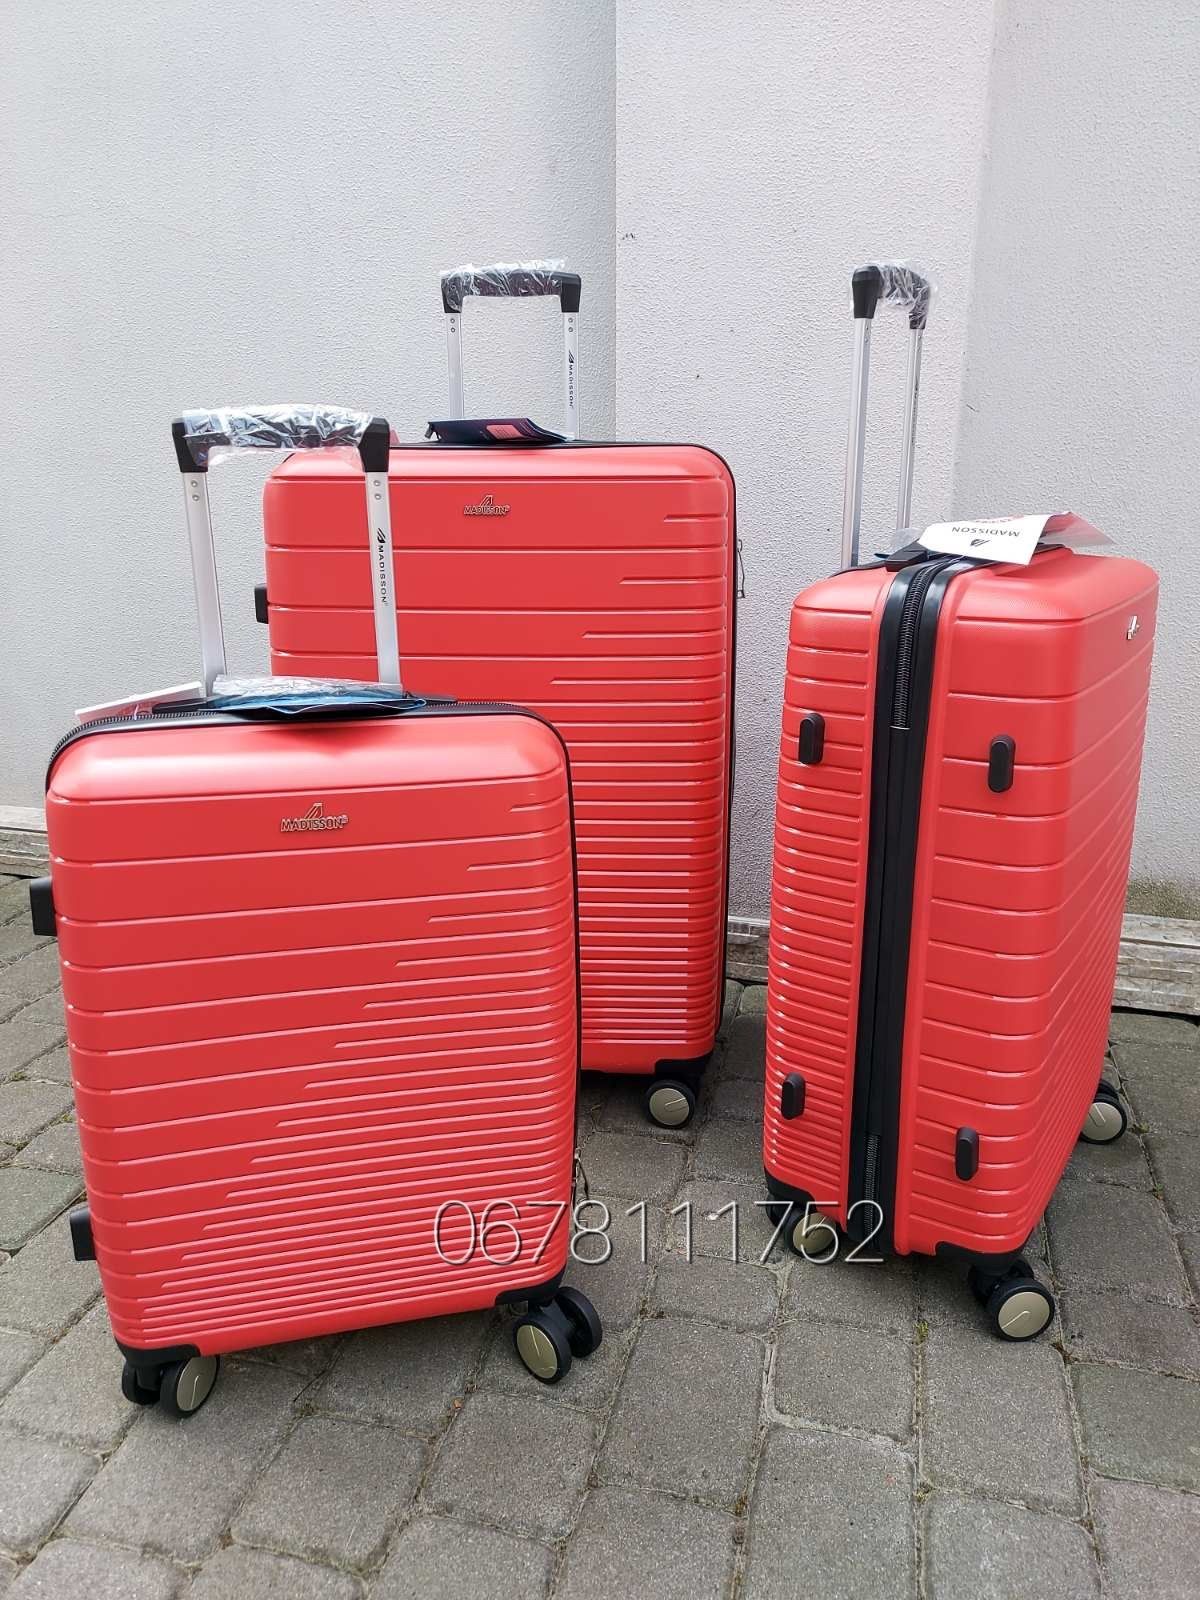 Від SNOWBALL madisson 33703 Франція валізи чемоданы сумки на колесах